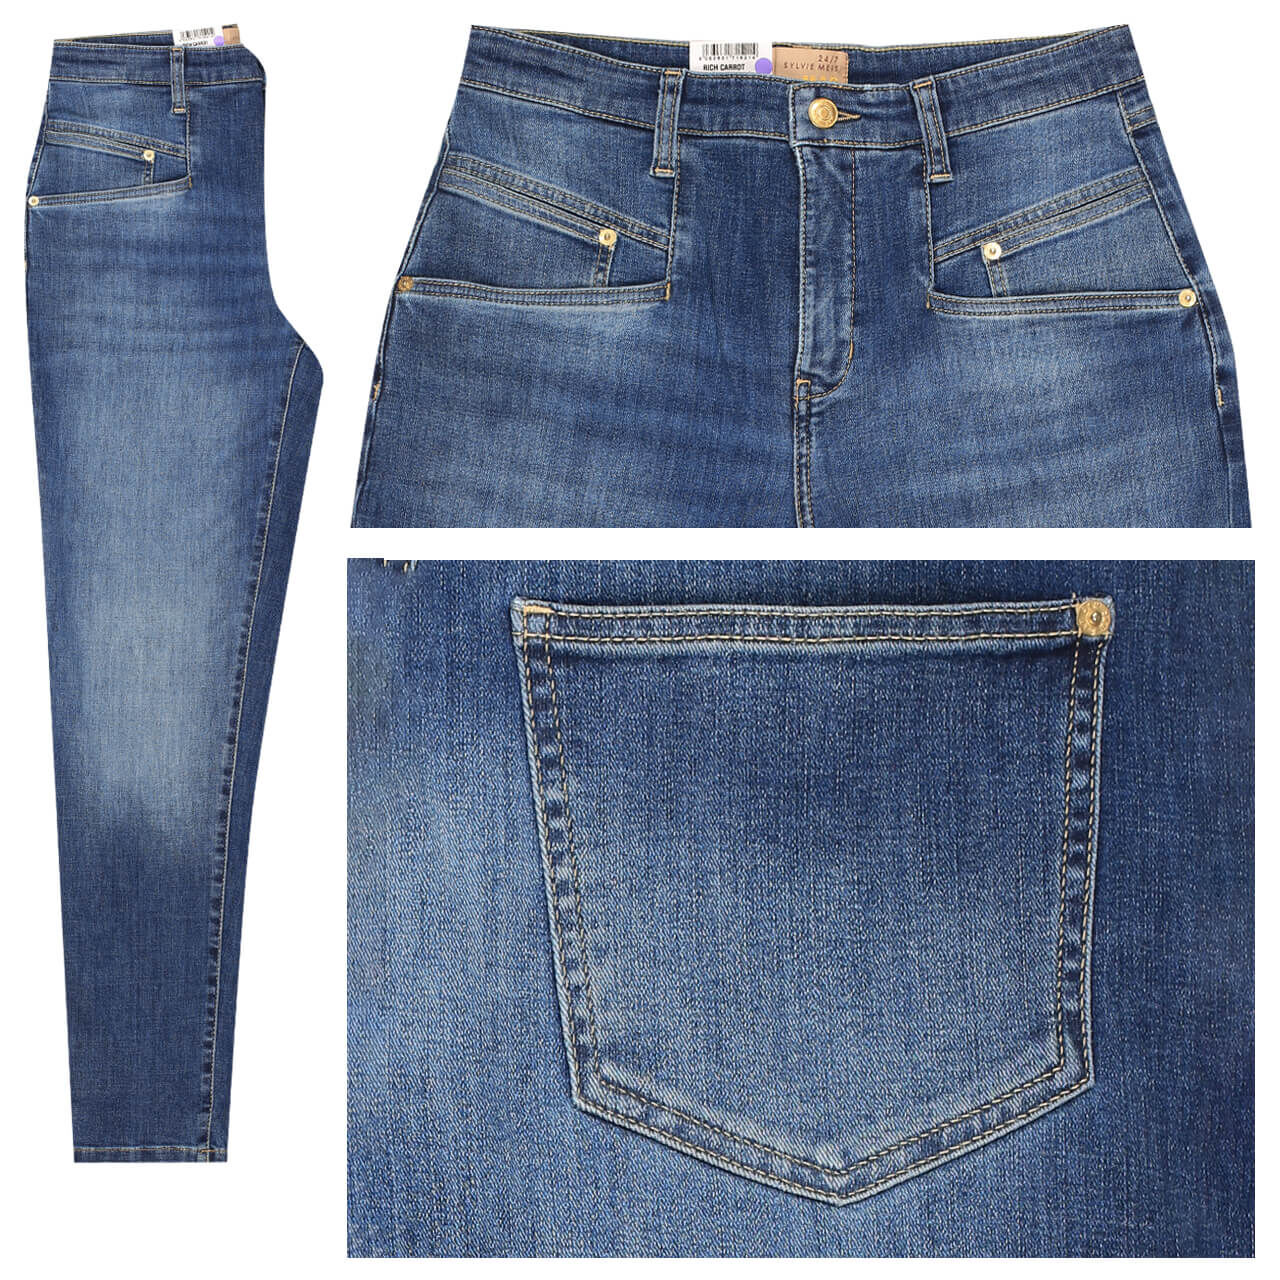 MAC Jeans Rich Carrot 7/8 für Damen in Mittelblau verwaschen, FarbNr.: D825